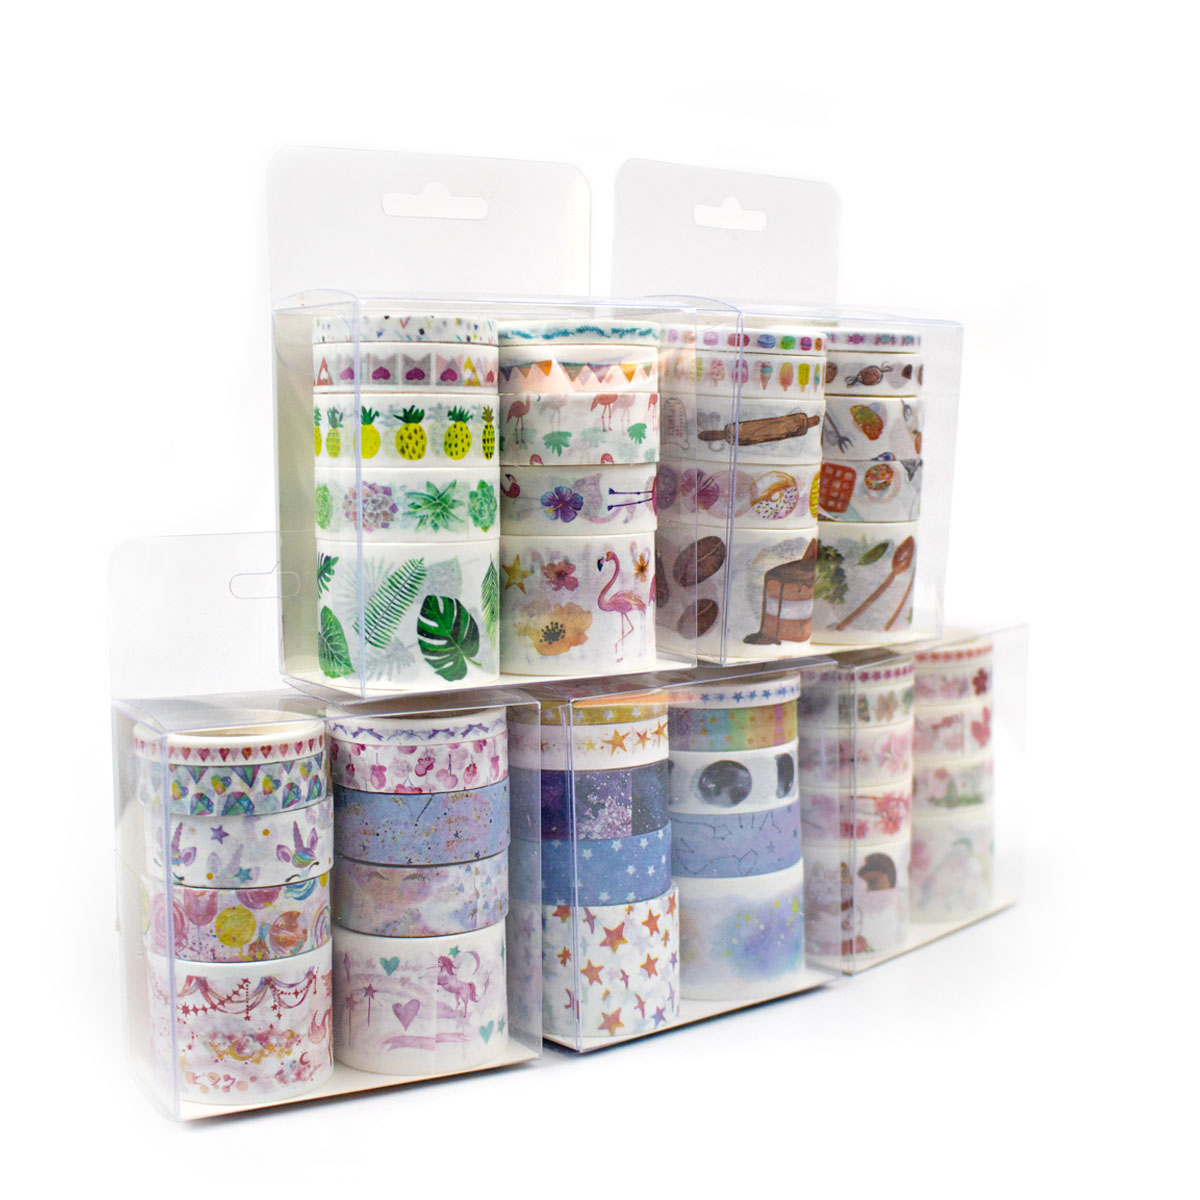 Washi Tape (Cinta Adhesiva con diseño) paquete con 8 unidades